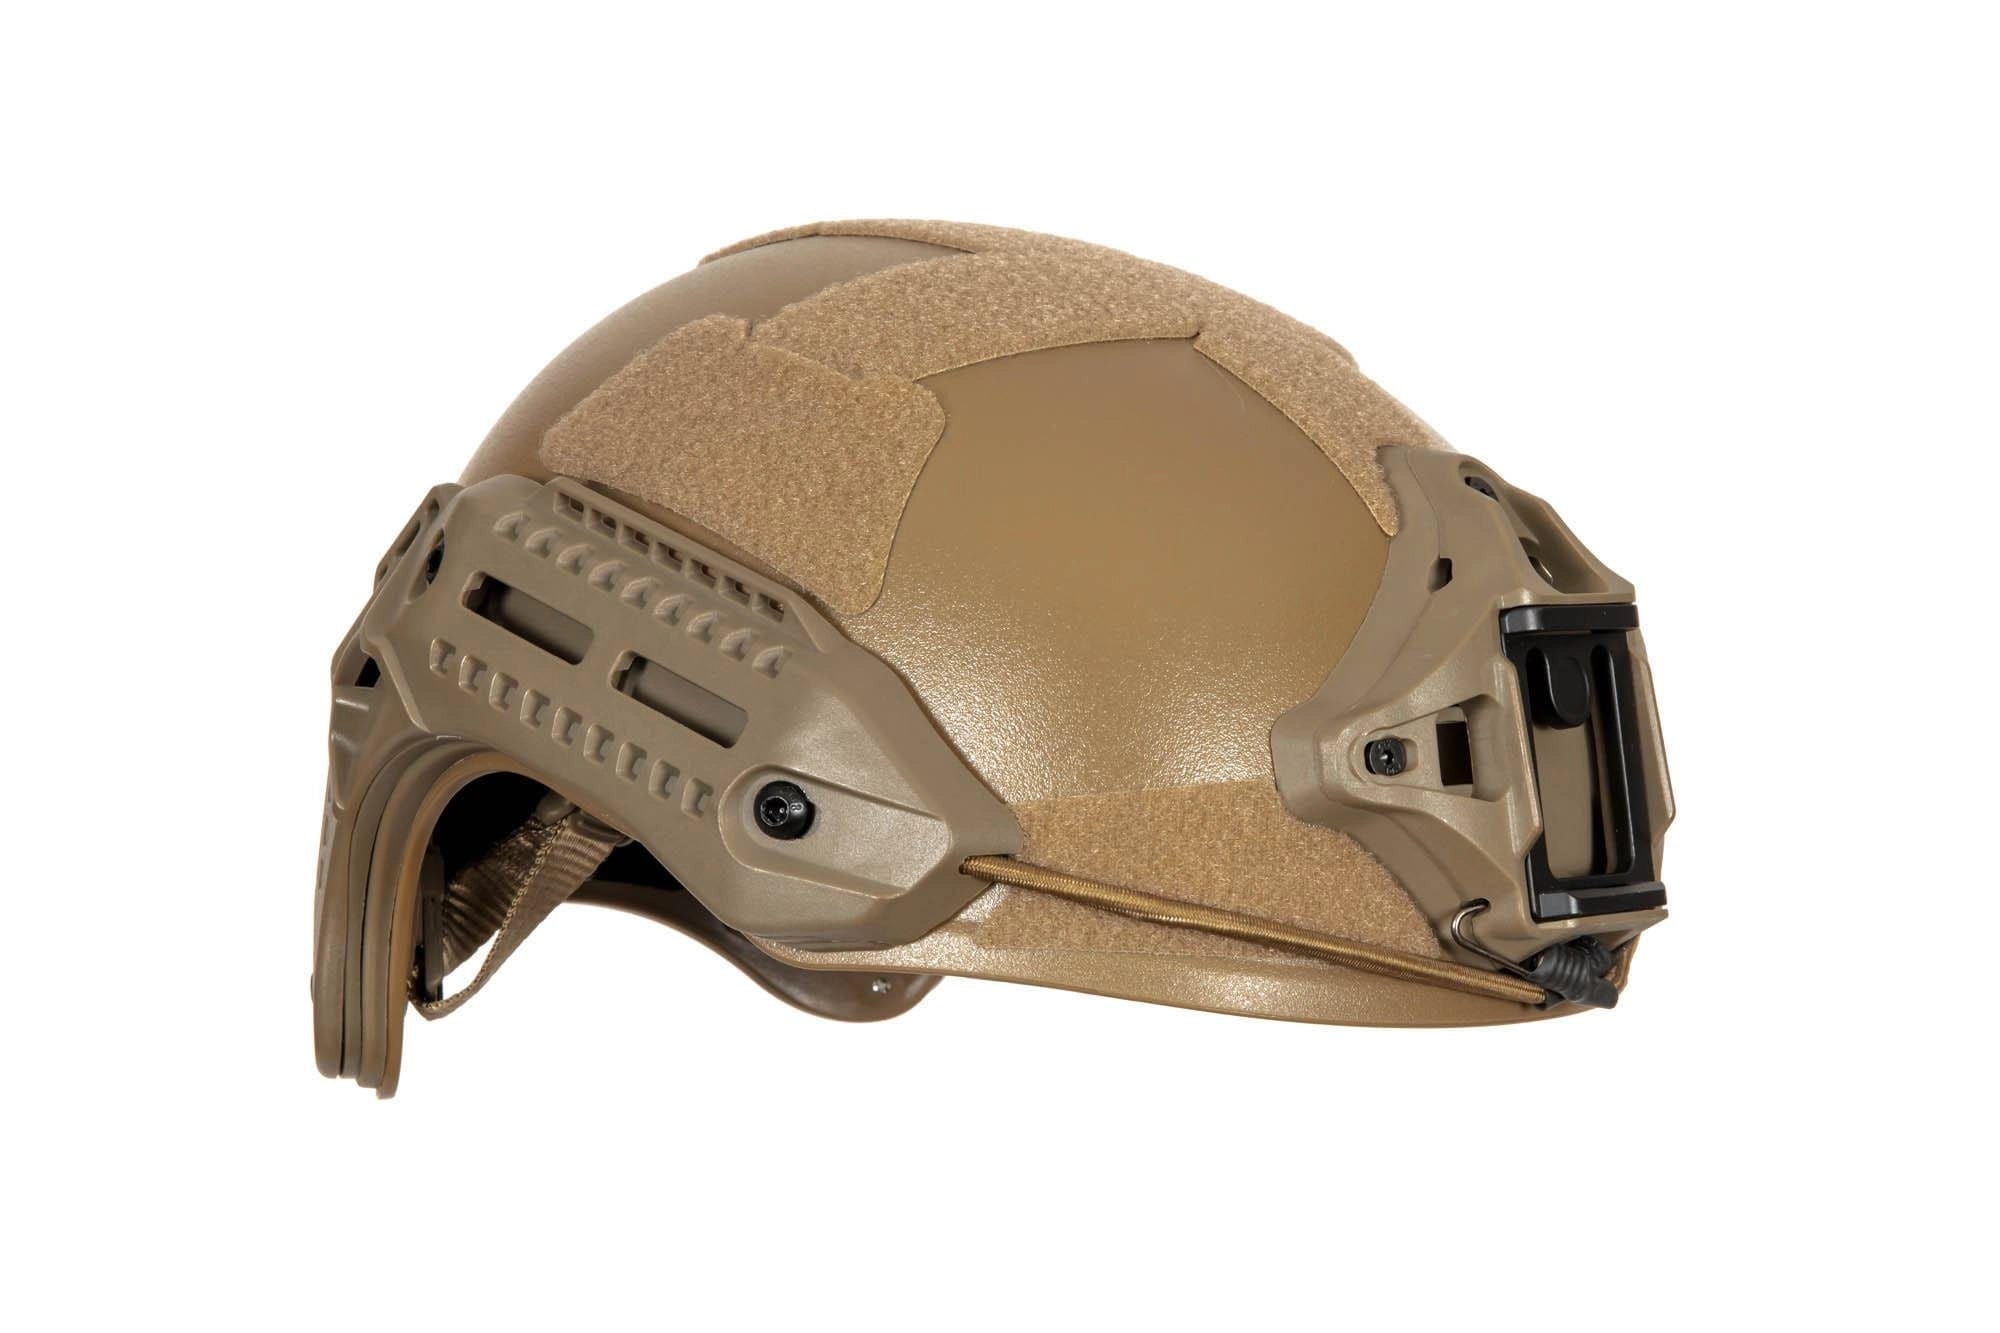 MK helm replica - Tan